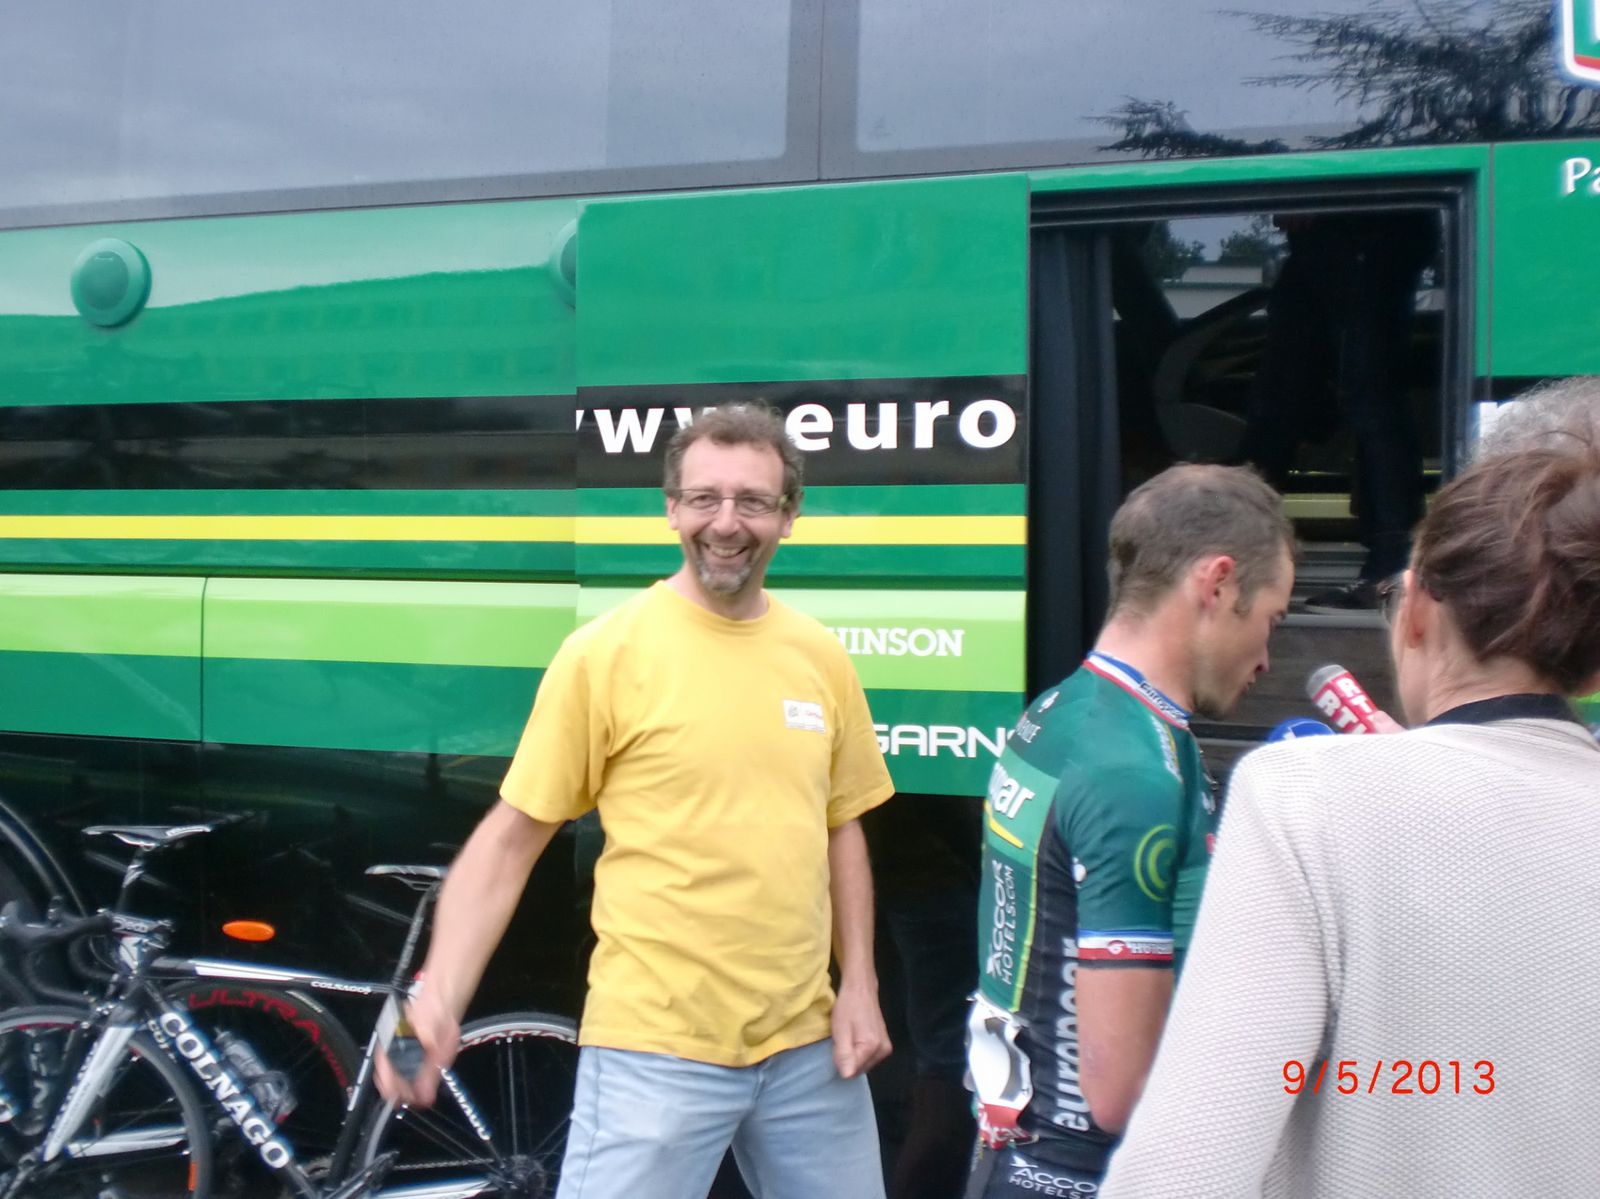 Vincent bientôt embauché chez Europcar aux côtés de Thomas Voeckler ?